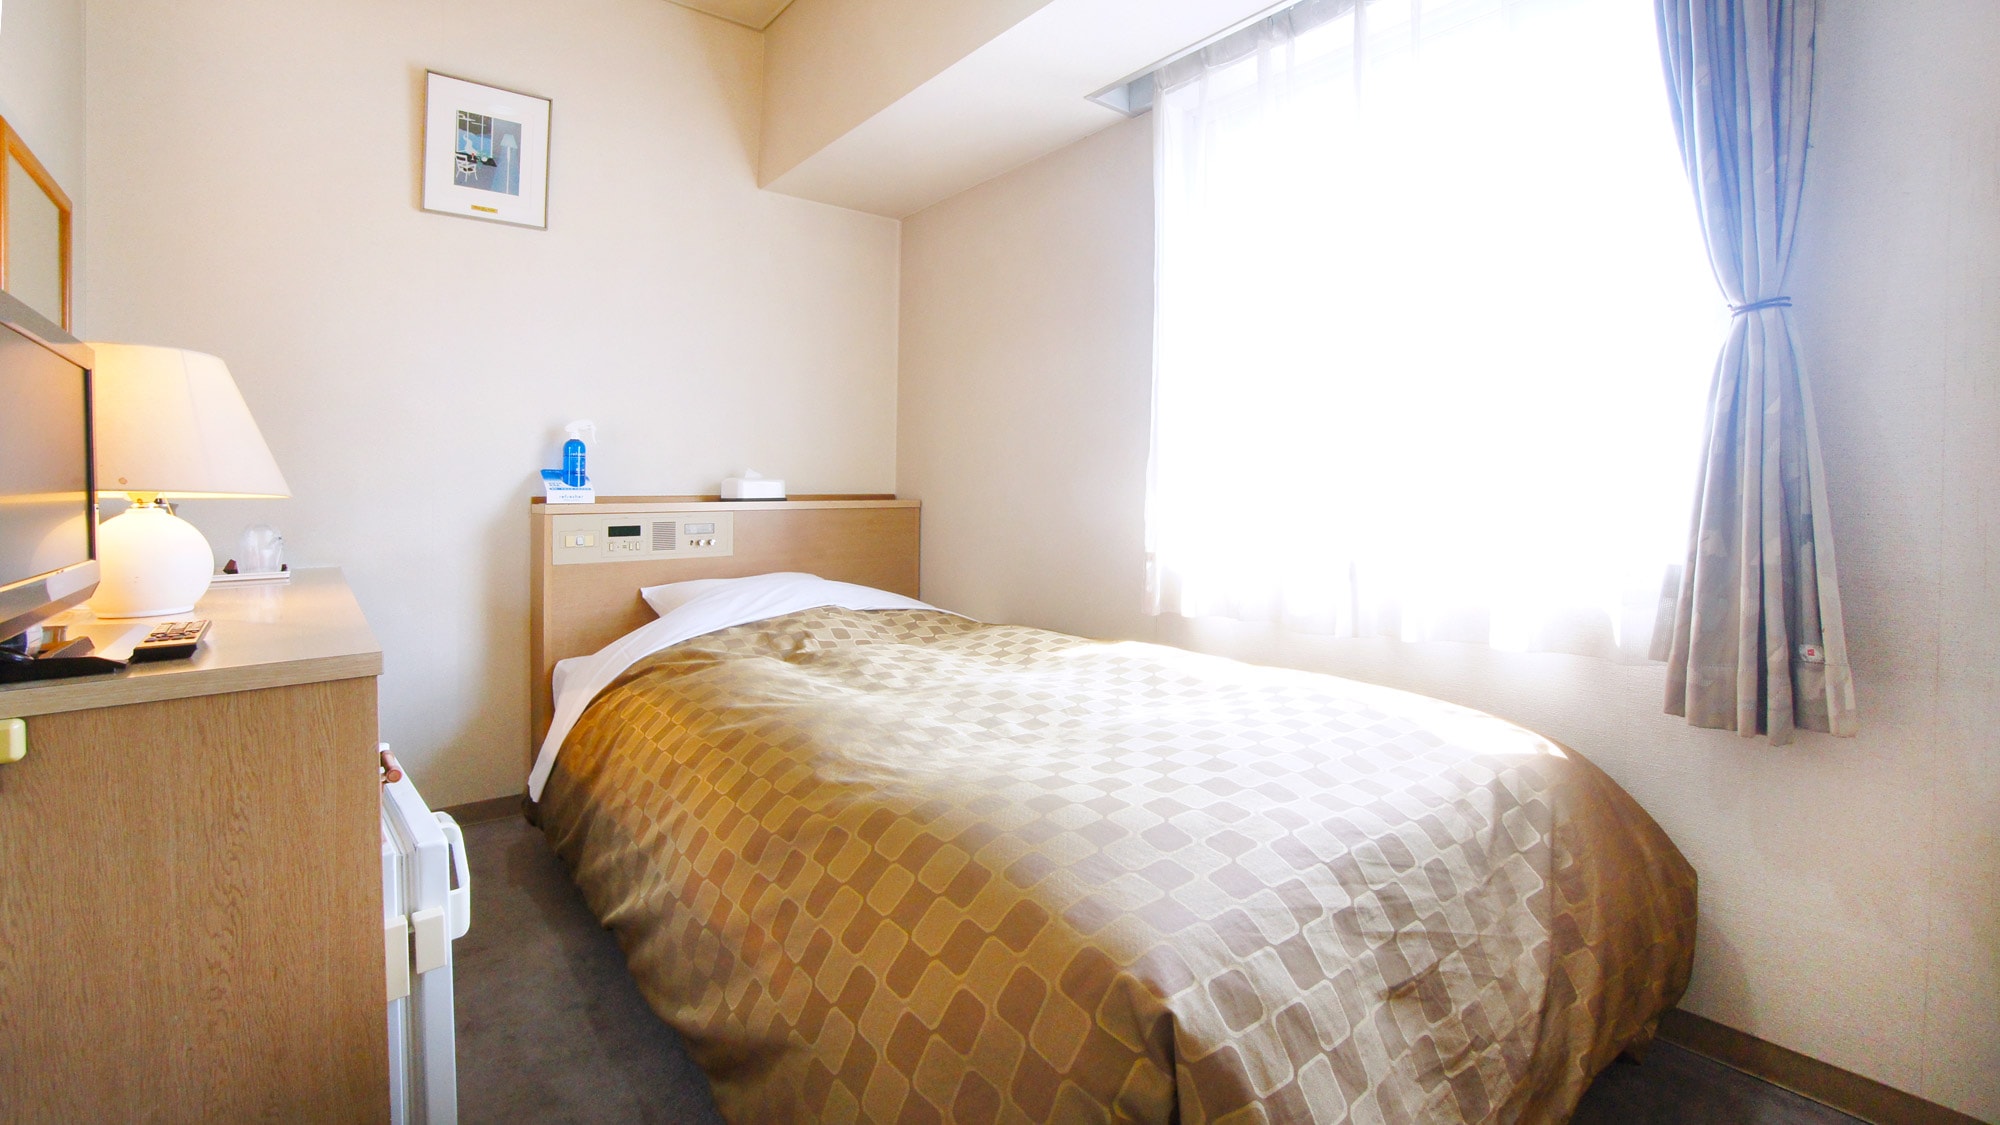 Kamar single Lebar tempat tidur 105cm Kamar santai nyaman untuk bisnis dan jalan-jalan